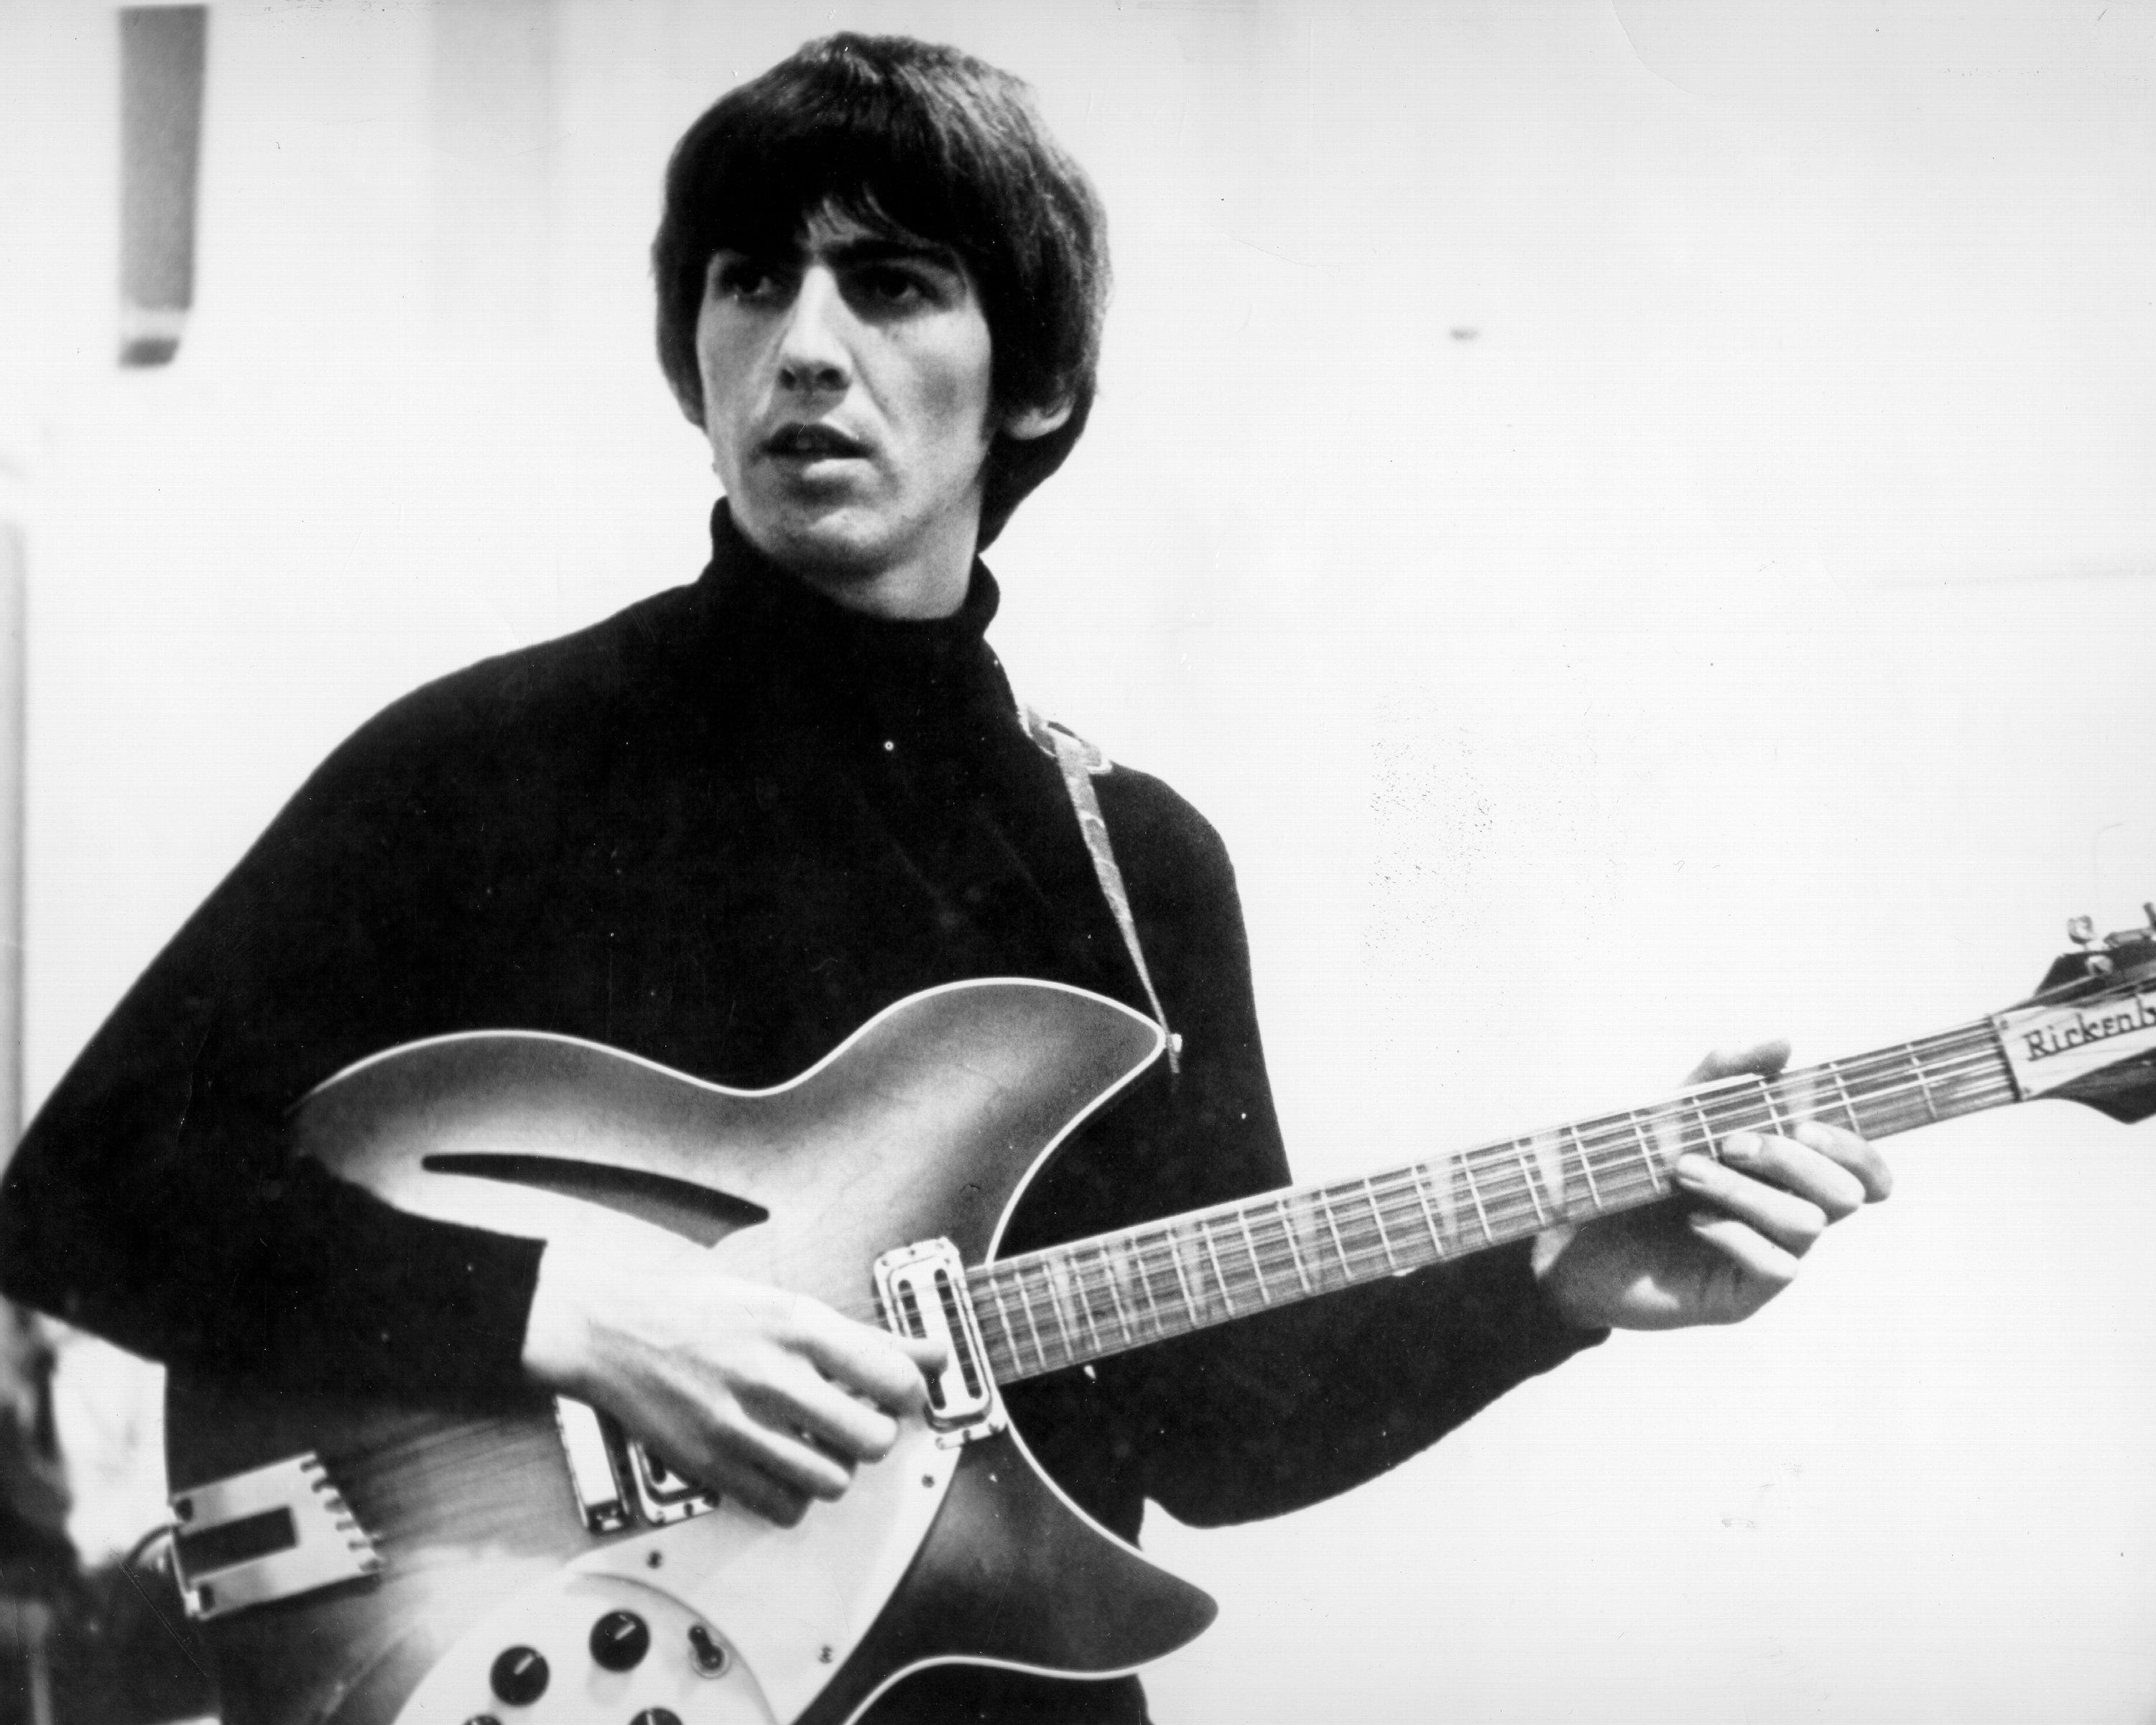 George Harrison Helped Inspire 'Wonderwall' by Oasis